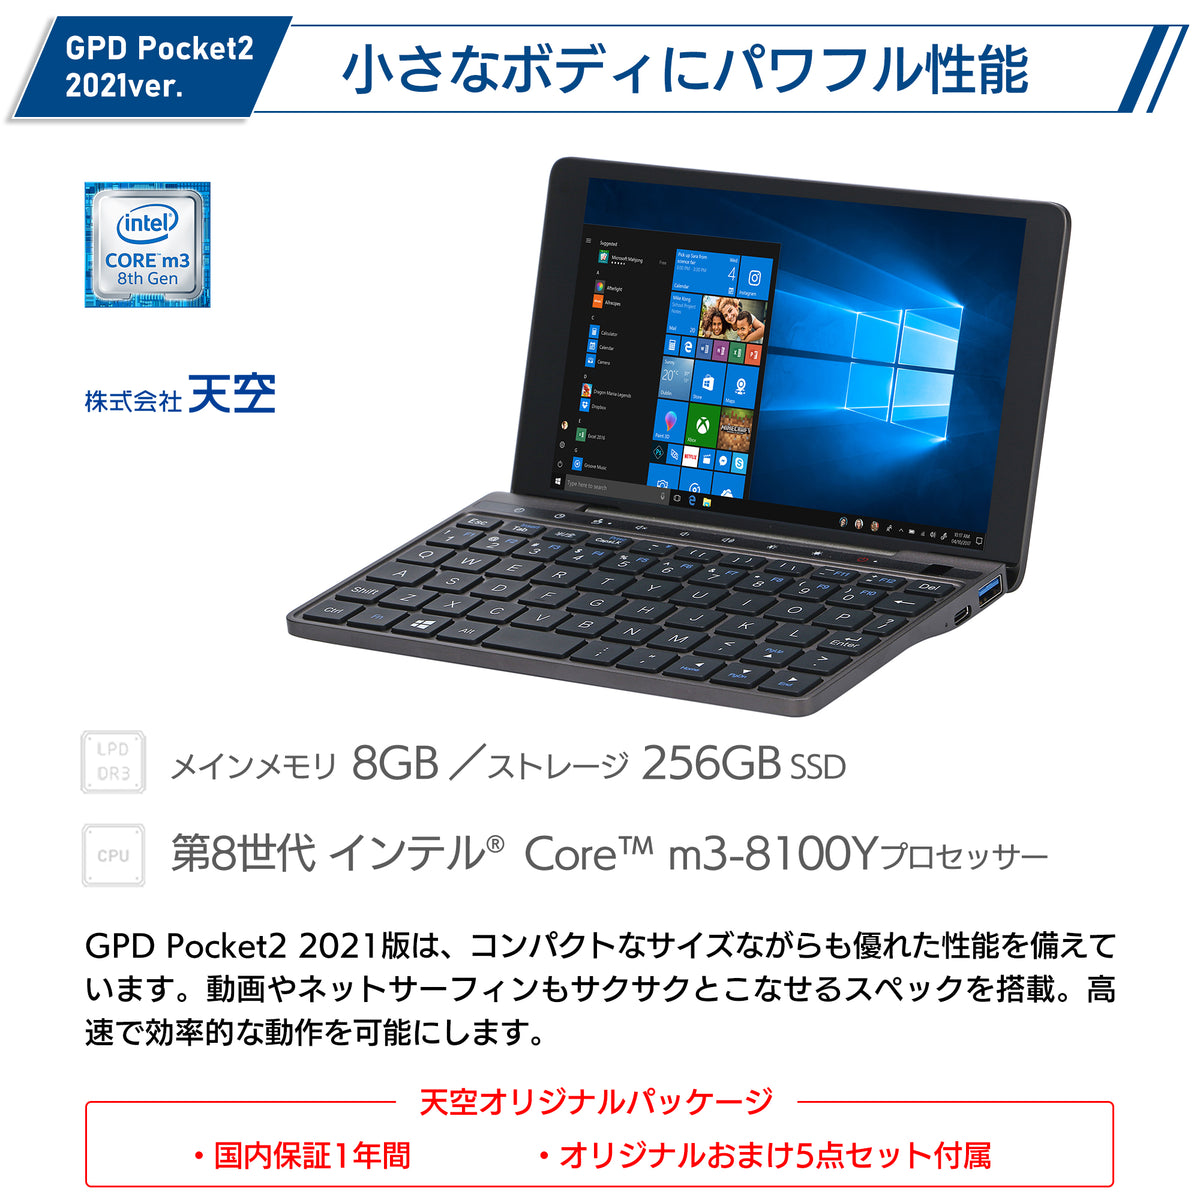 【極美品】GPD Pocket 2 m3-8100y 高スペックモデル